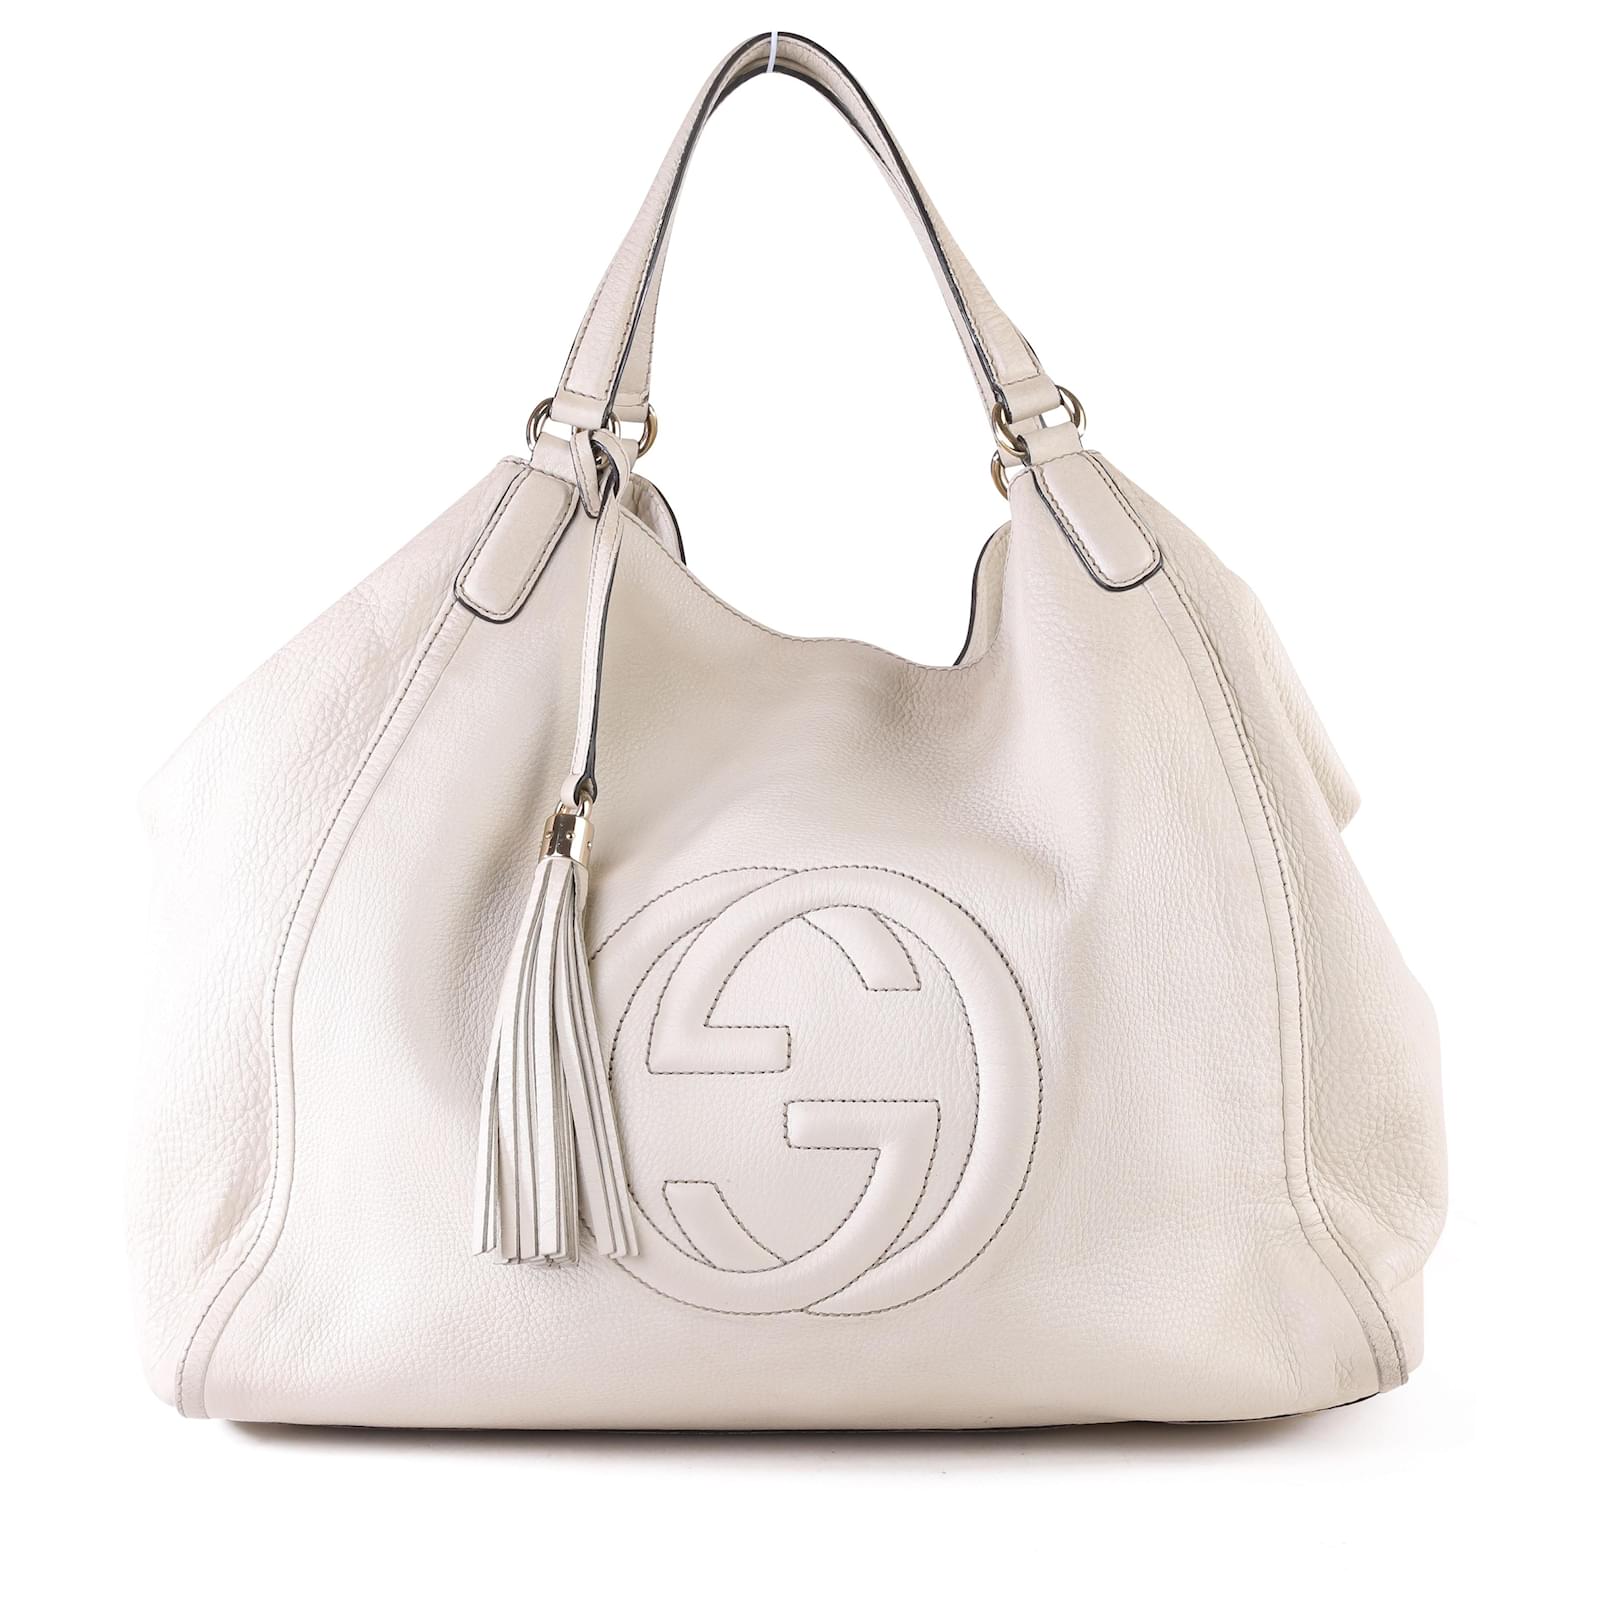 Soho shoulder bag - Gucci